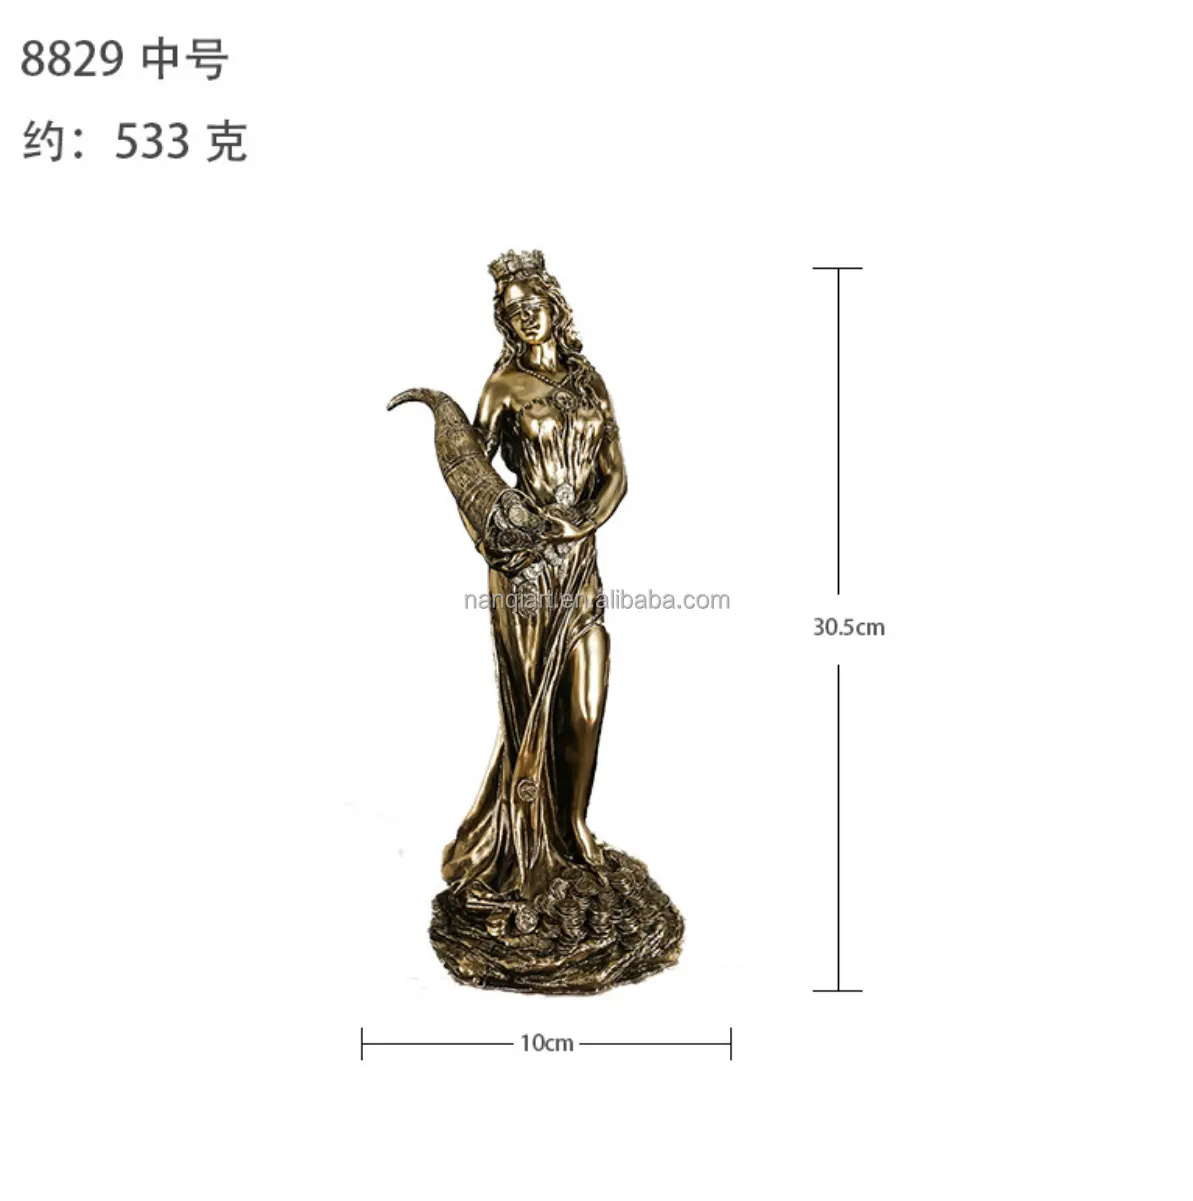 Großhandel günstige kleine Resin-Kupfer-Skulpturen künstliche handgemachte Mini-Resin-Figur Handwerk für Innendekoration günstige Statuen